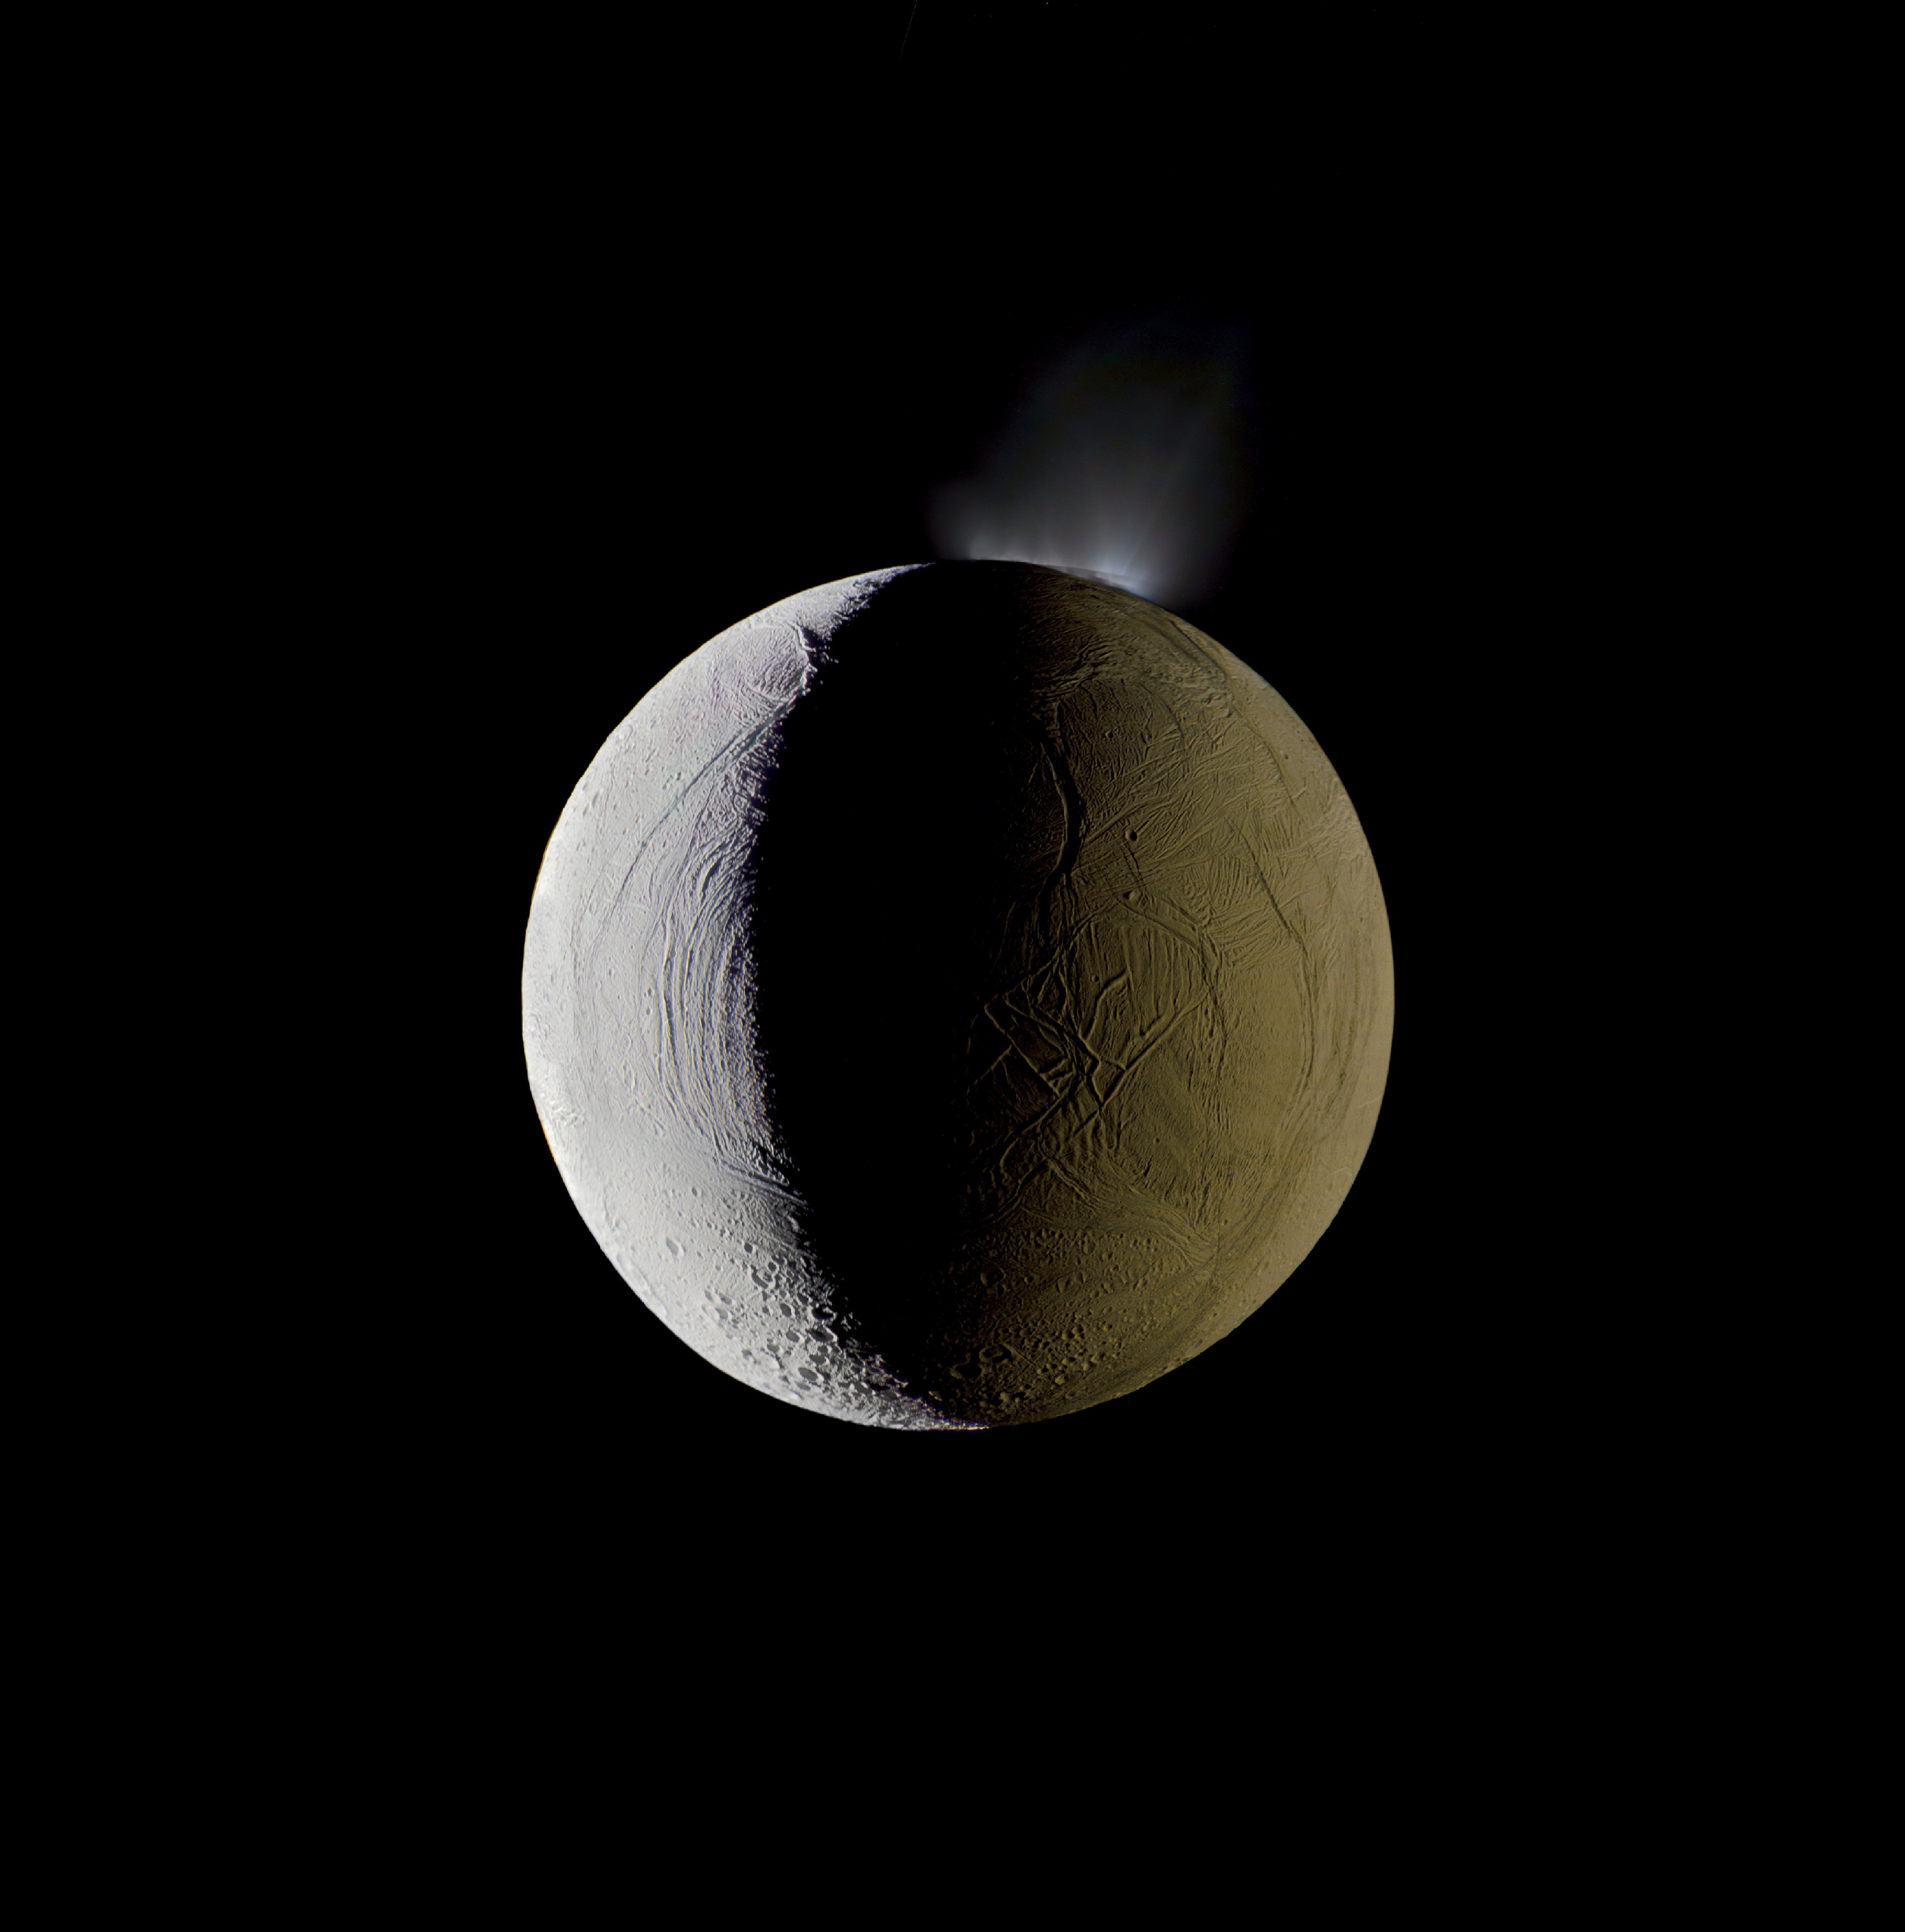 Água entrando na órbita da lua Enceladus (de Saturno), tirada pela sonda Cassini